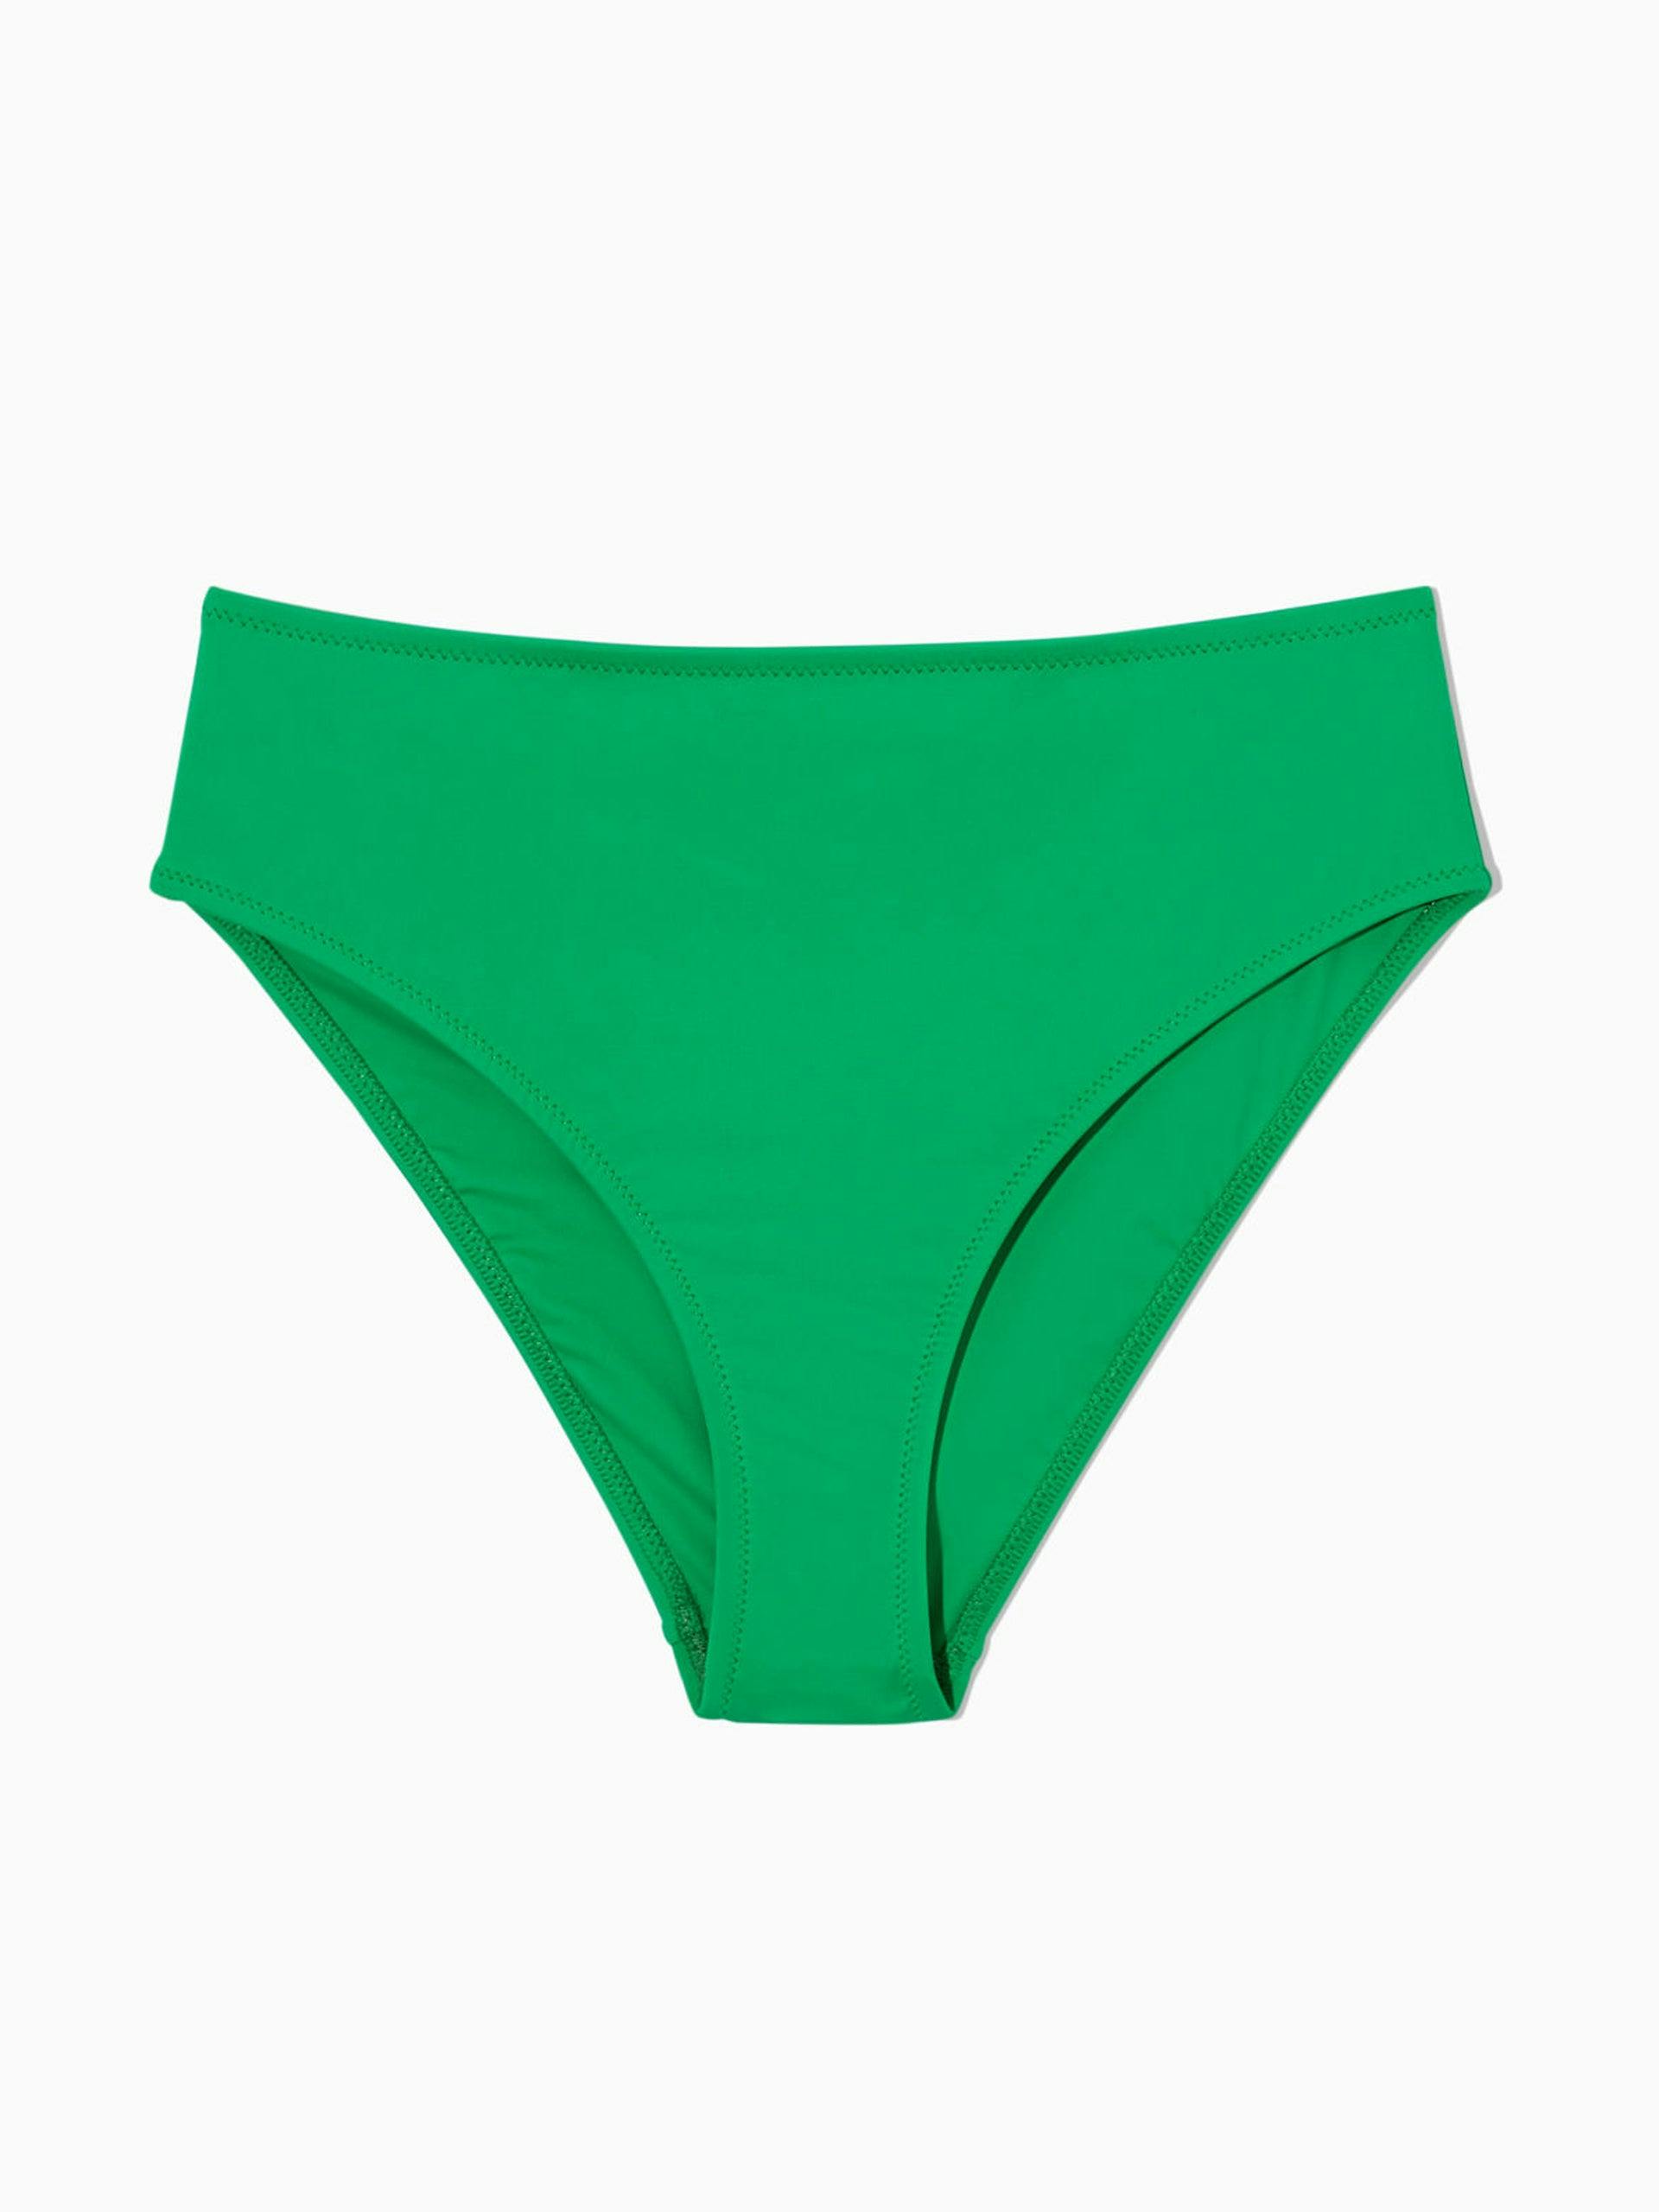 Green high-waist bikini briefs